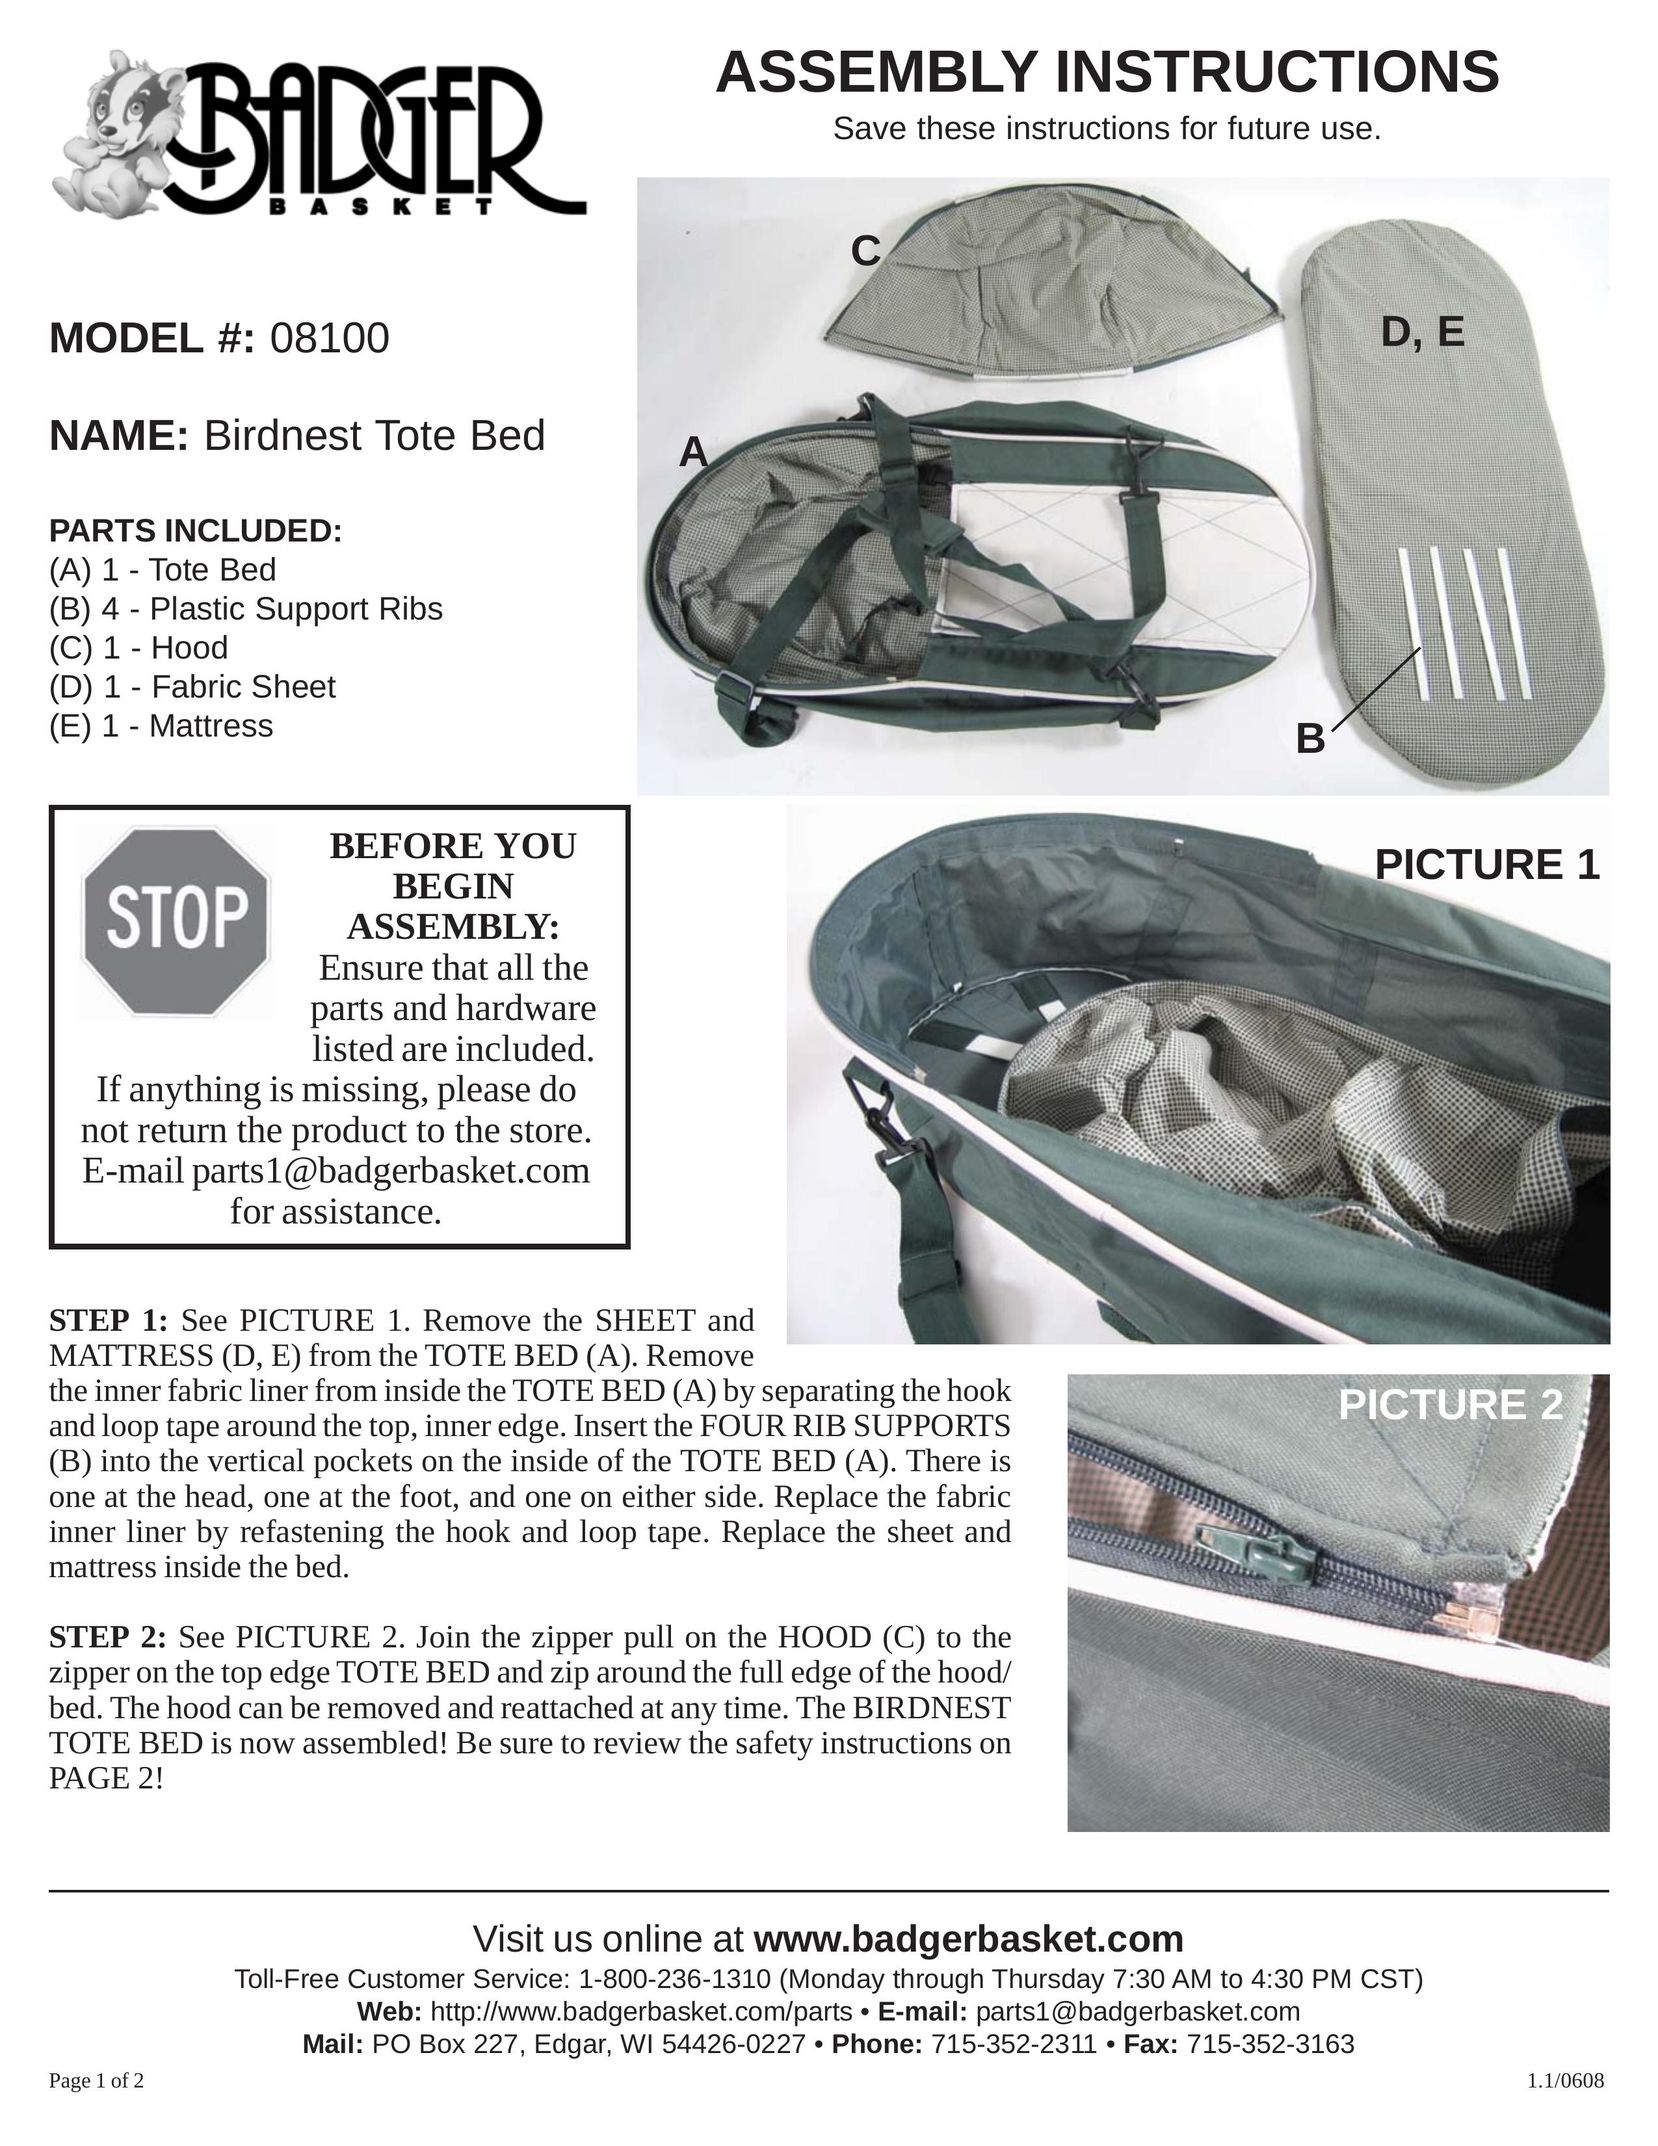 Badger Basket 08100 Camping Equipment User Manual